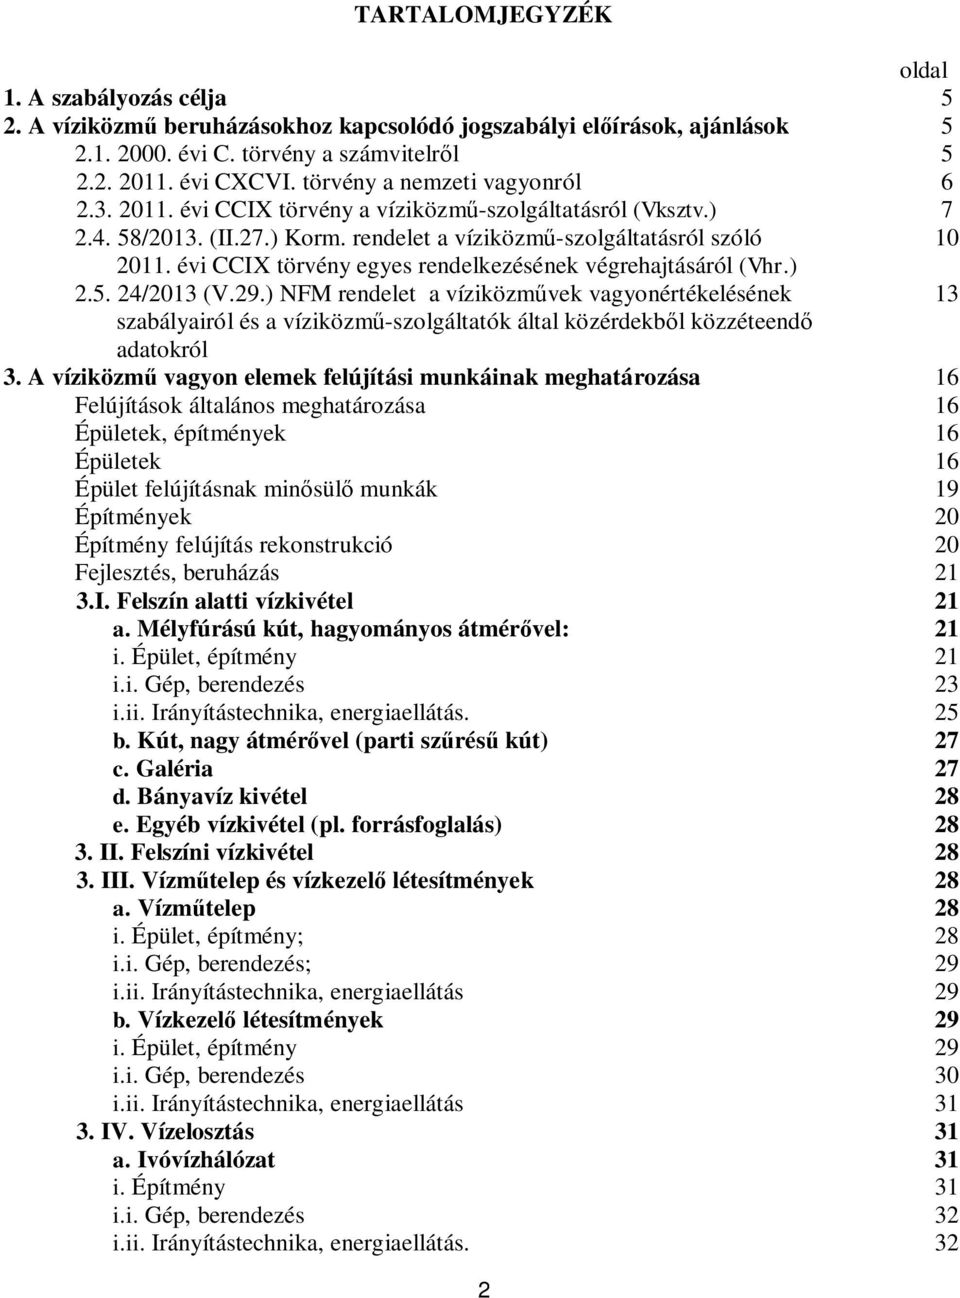 évi CCIX törvény egyes rendelkezésének végrehajtásáról (Vhr.) 2.5. 24/2013 (V.29.